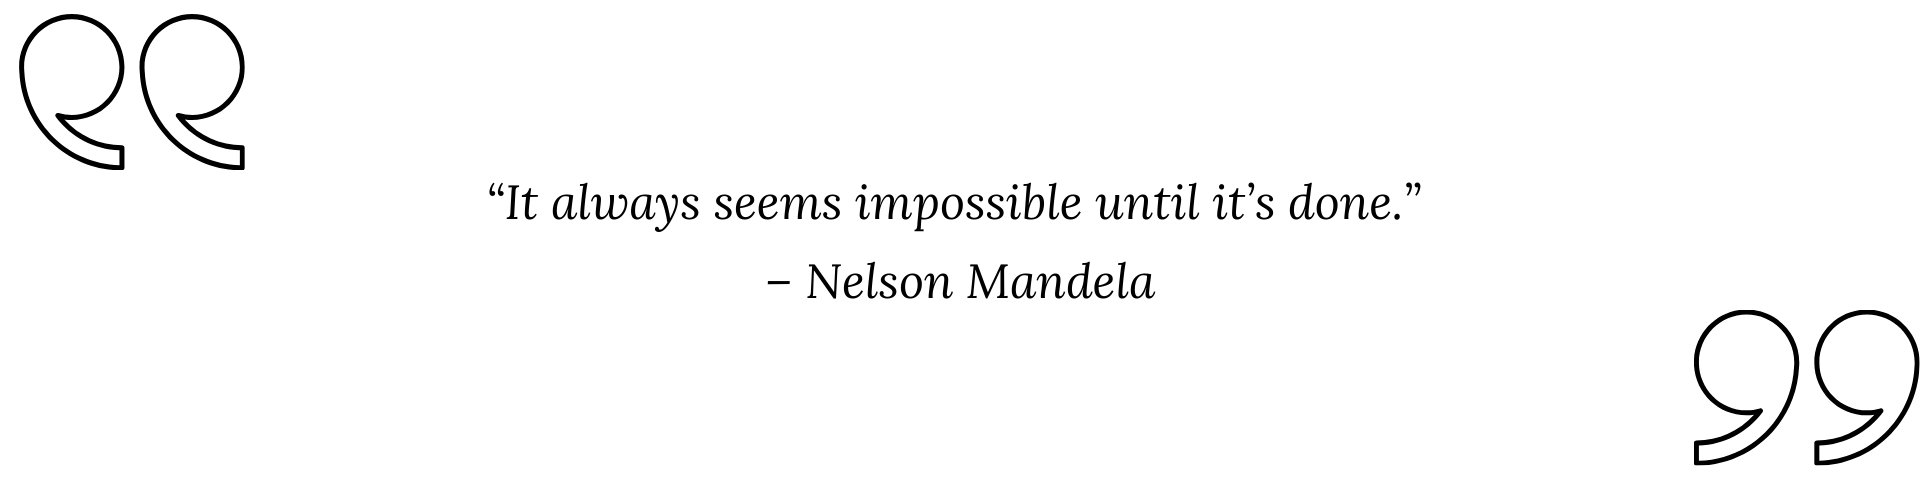 Mandela quote 